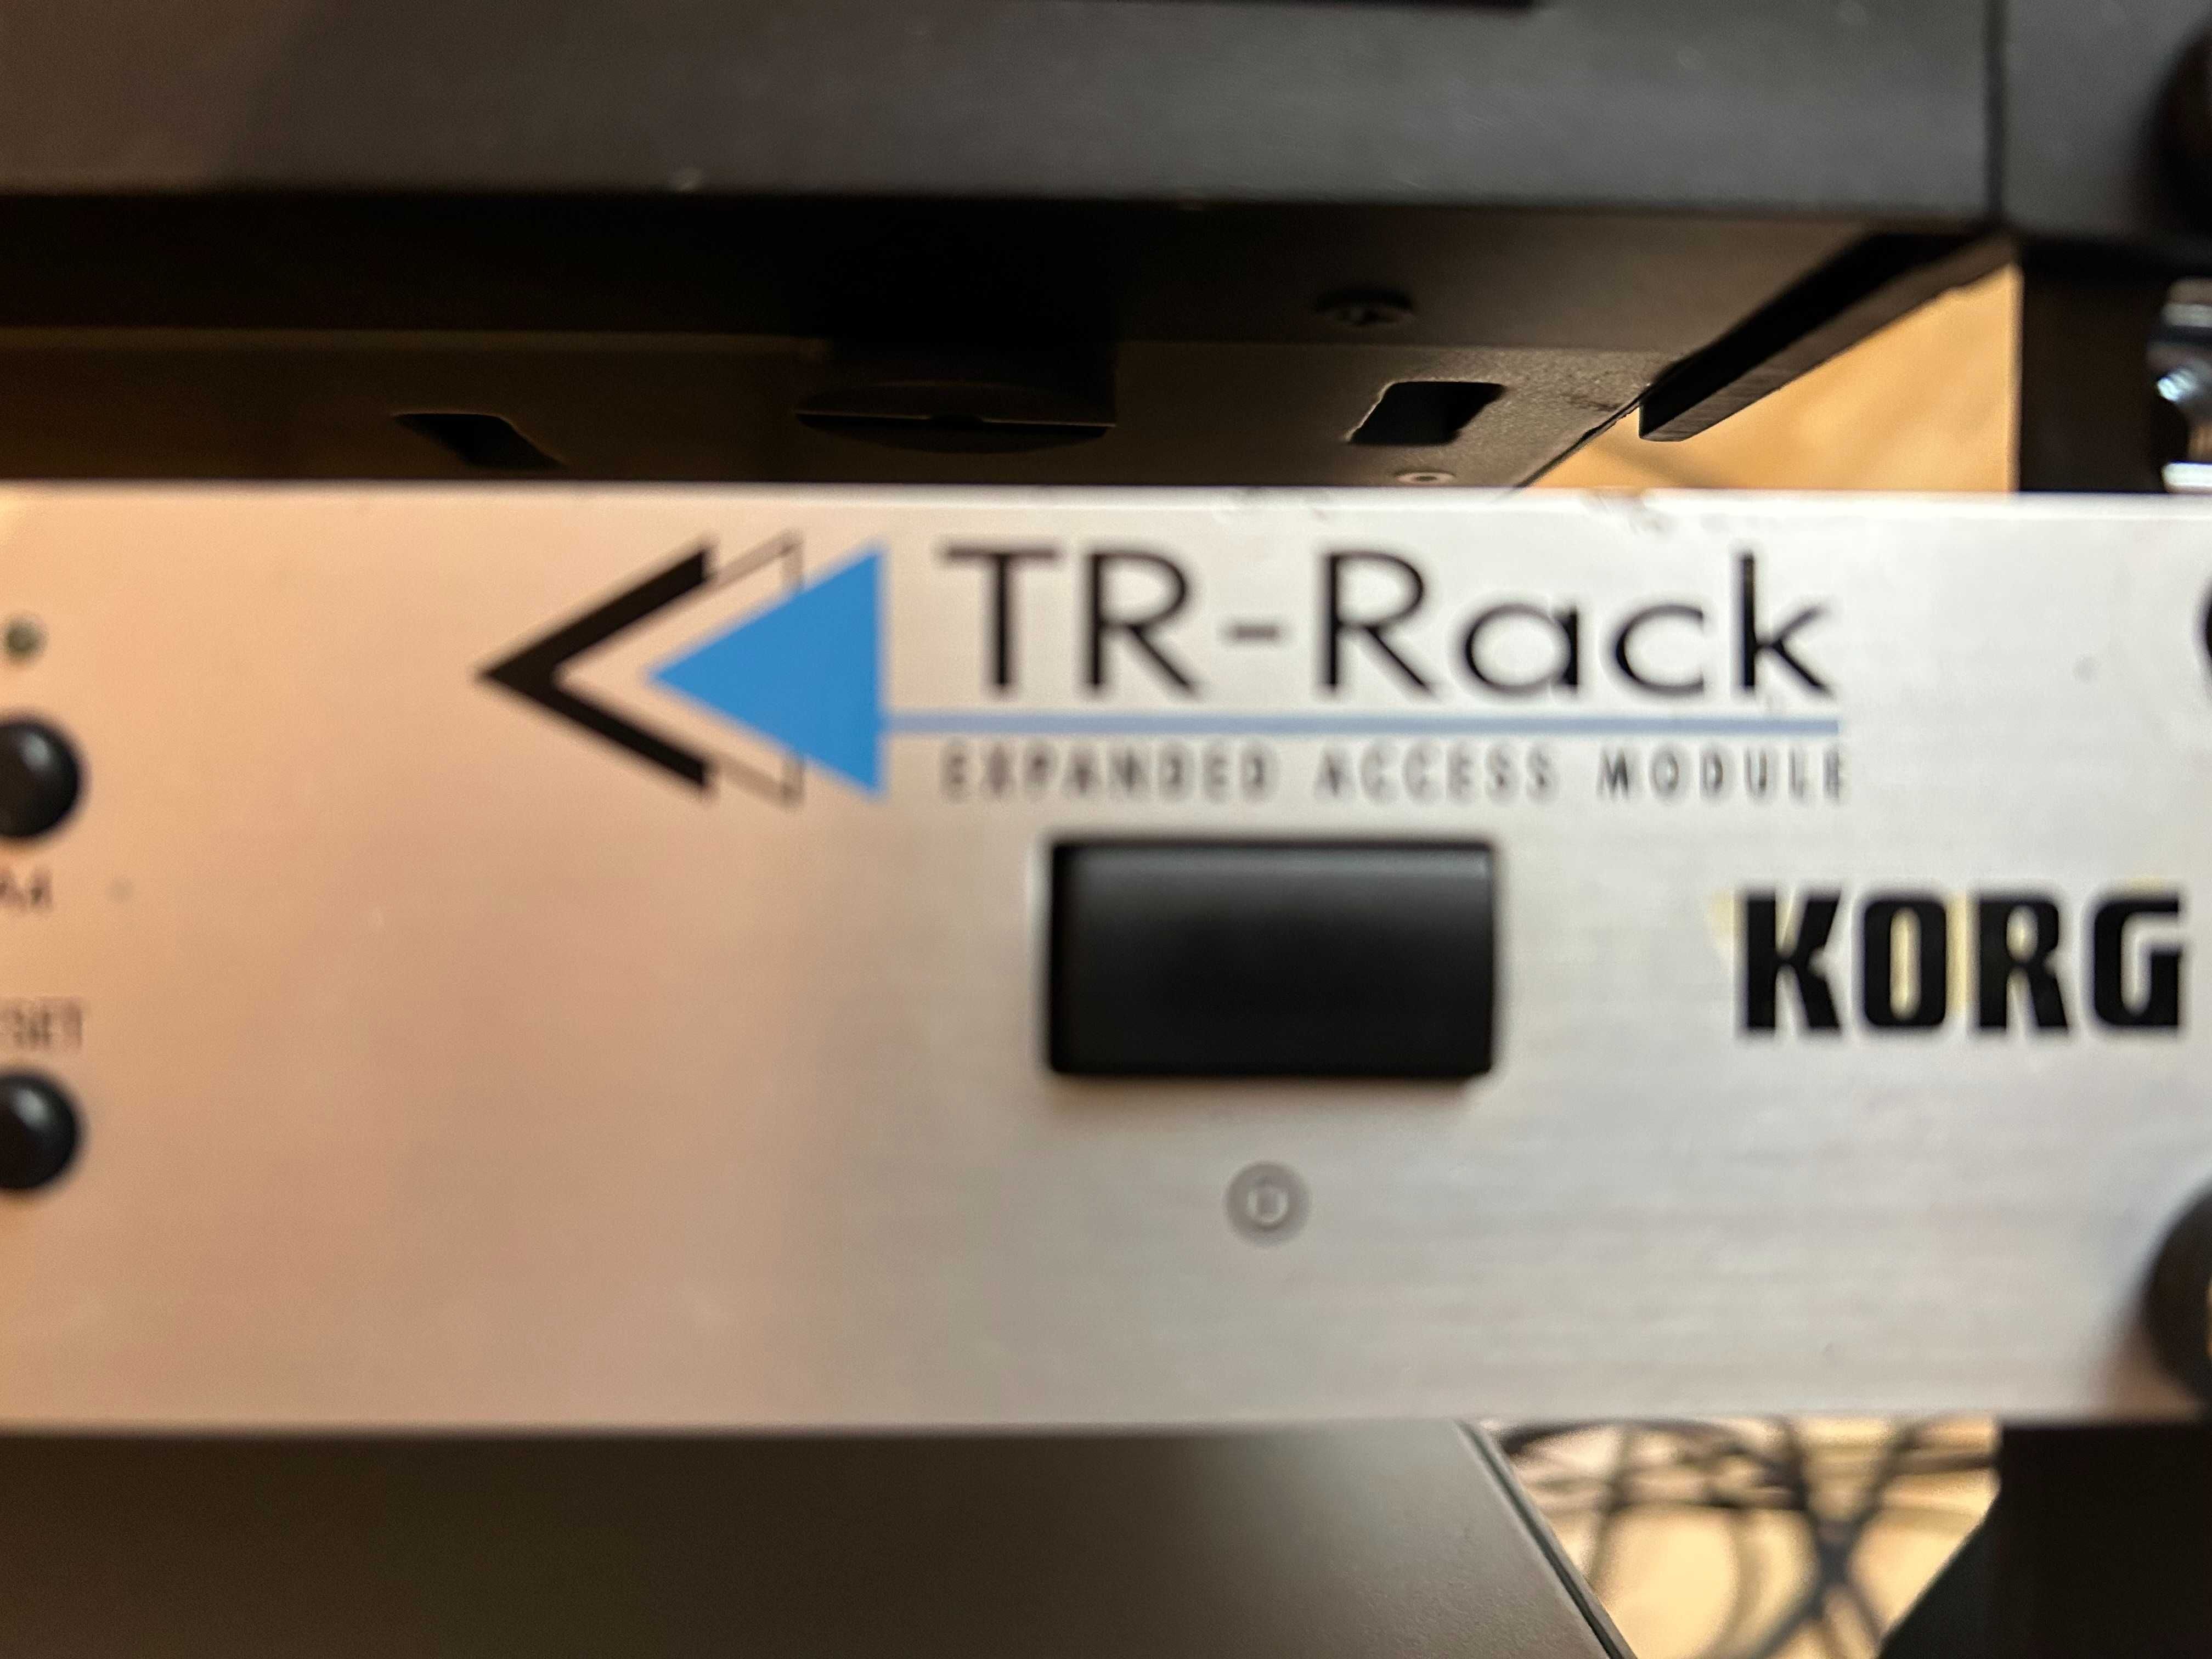 Korg TR Rack Legenda